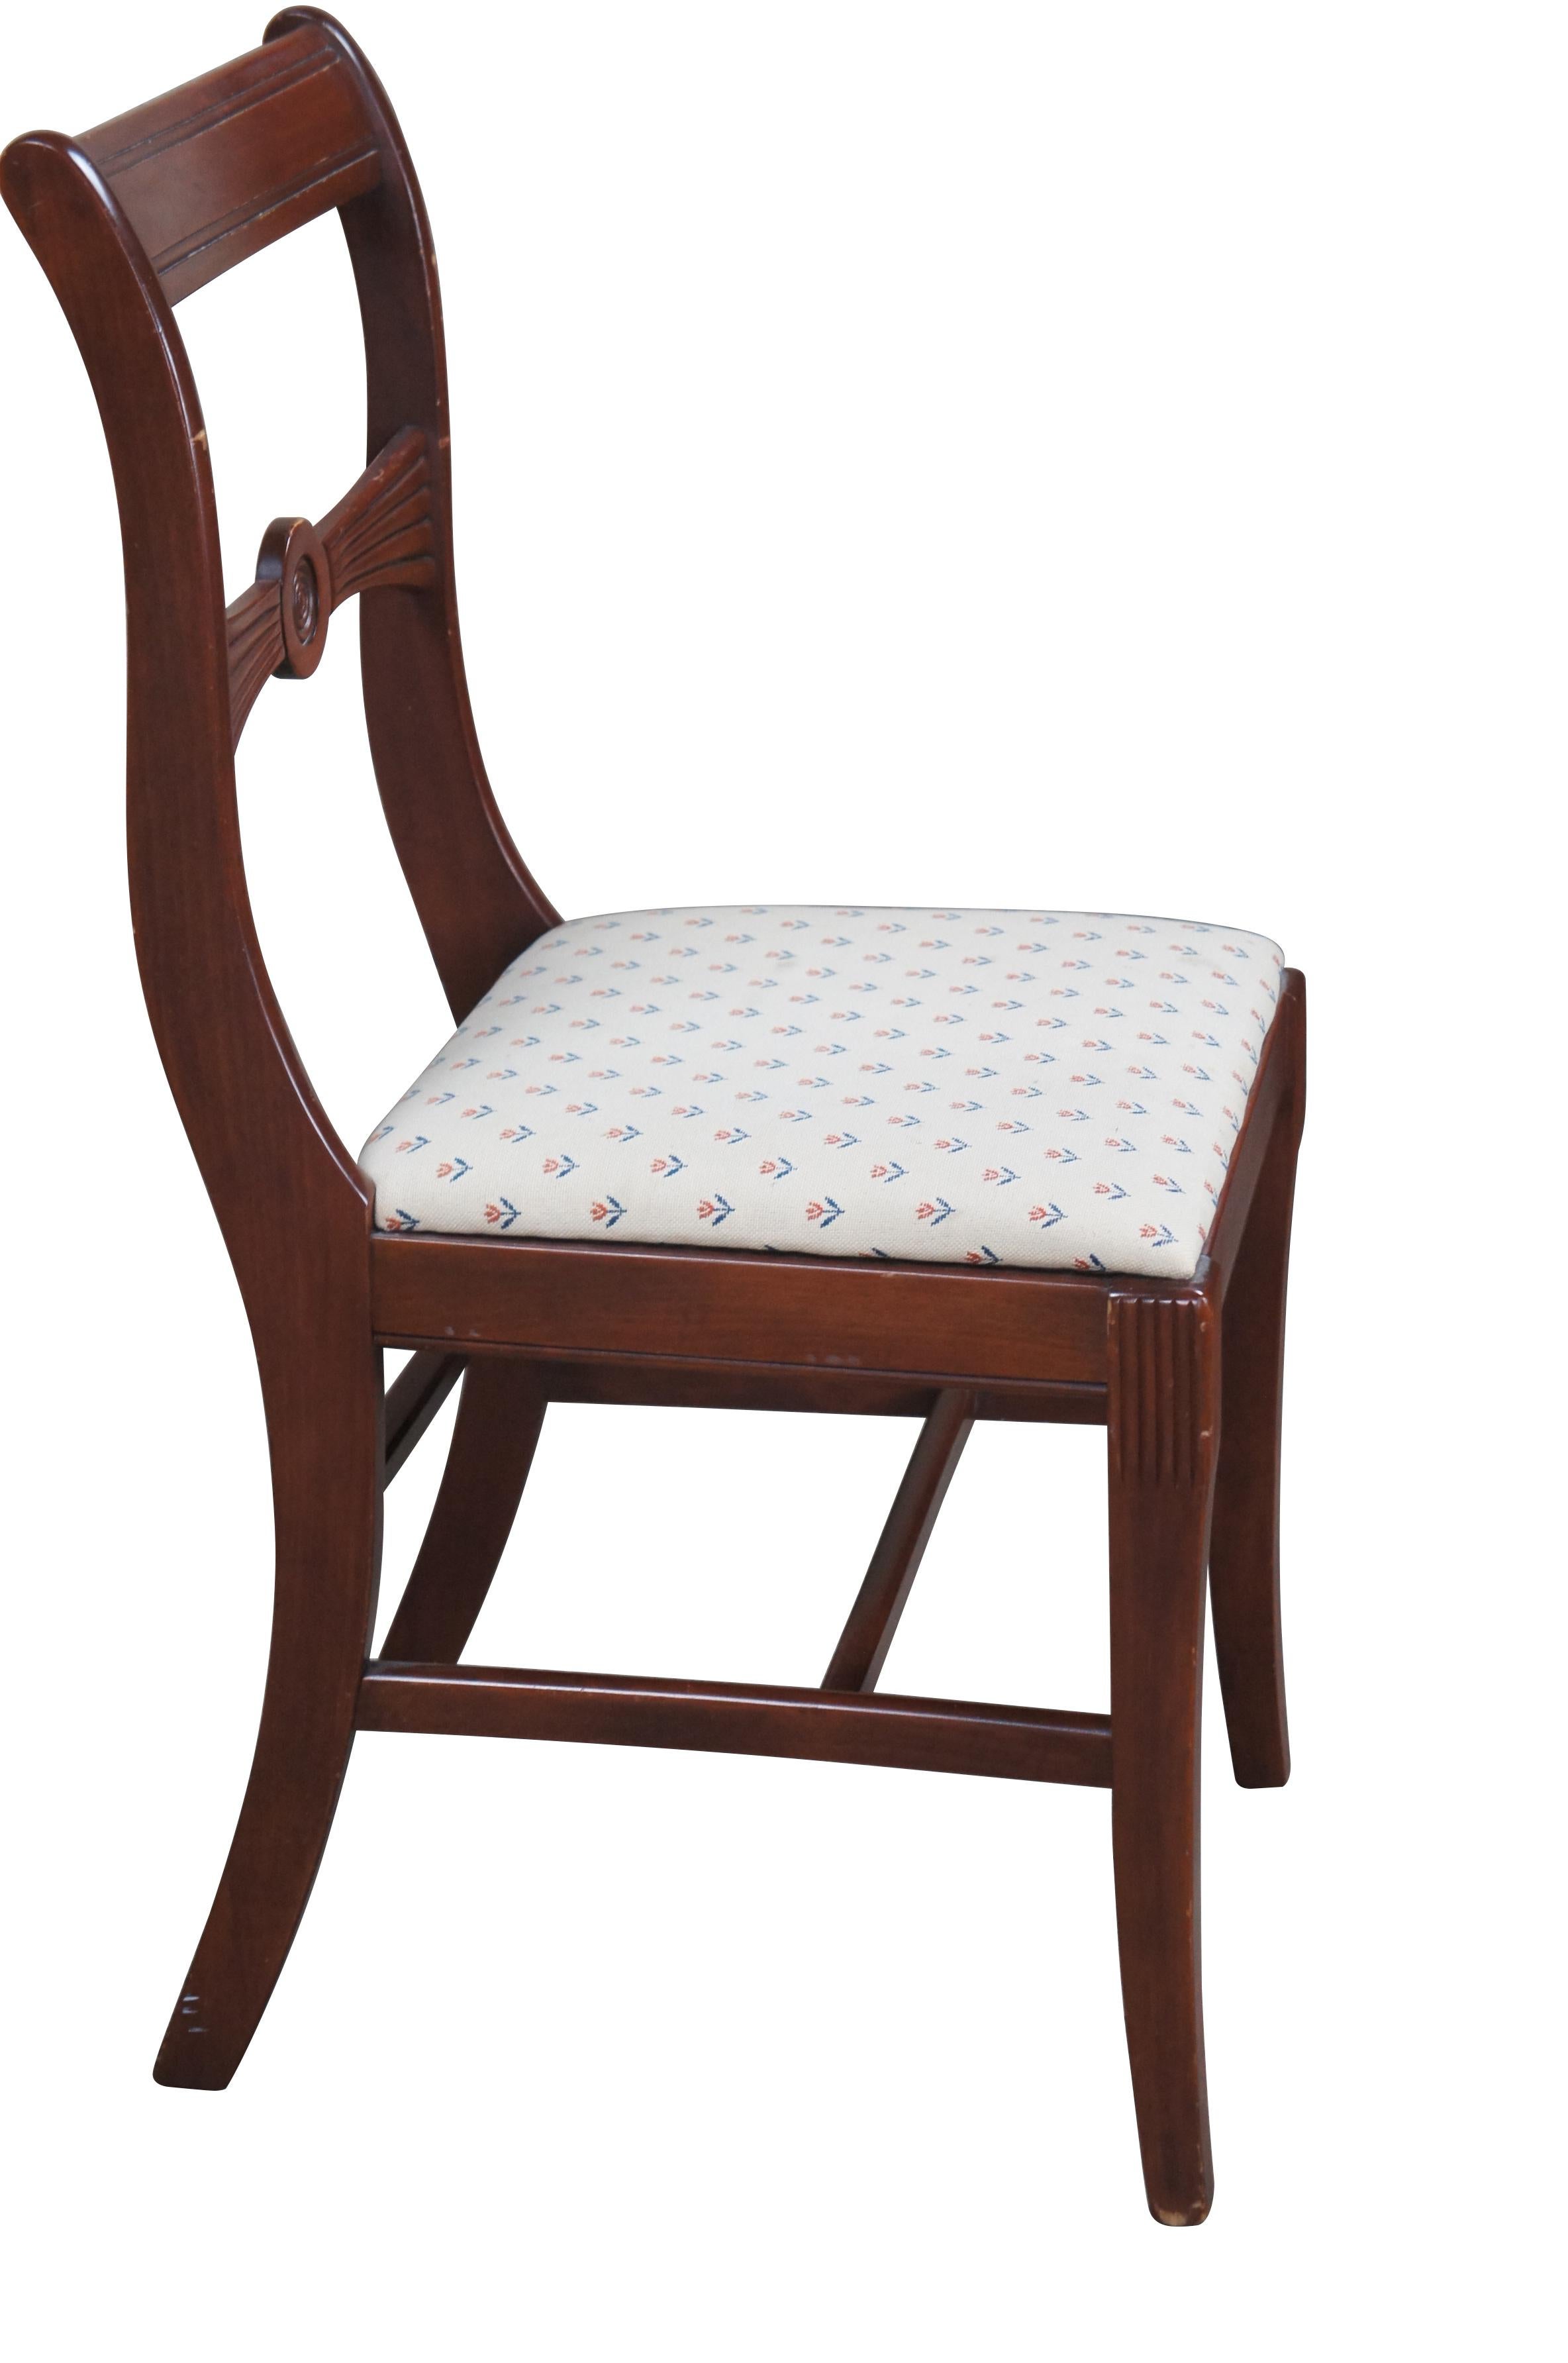 Chaise de salle à manger Duncan Phyfe / Regency Style des années 1940.  Fabriqué en acajou avec une barre de crête profilée et un dossier en forme d'arc.  L'assise est tapissée d'un motif répété de tulipes et de roses.  Les pieds avant sont cannelés